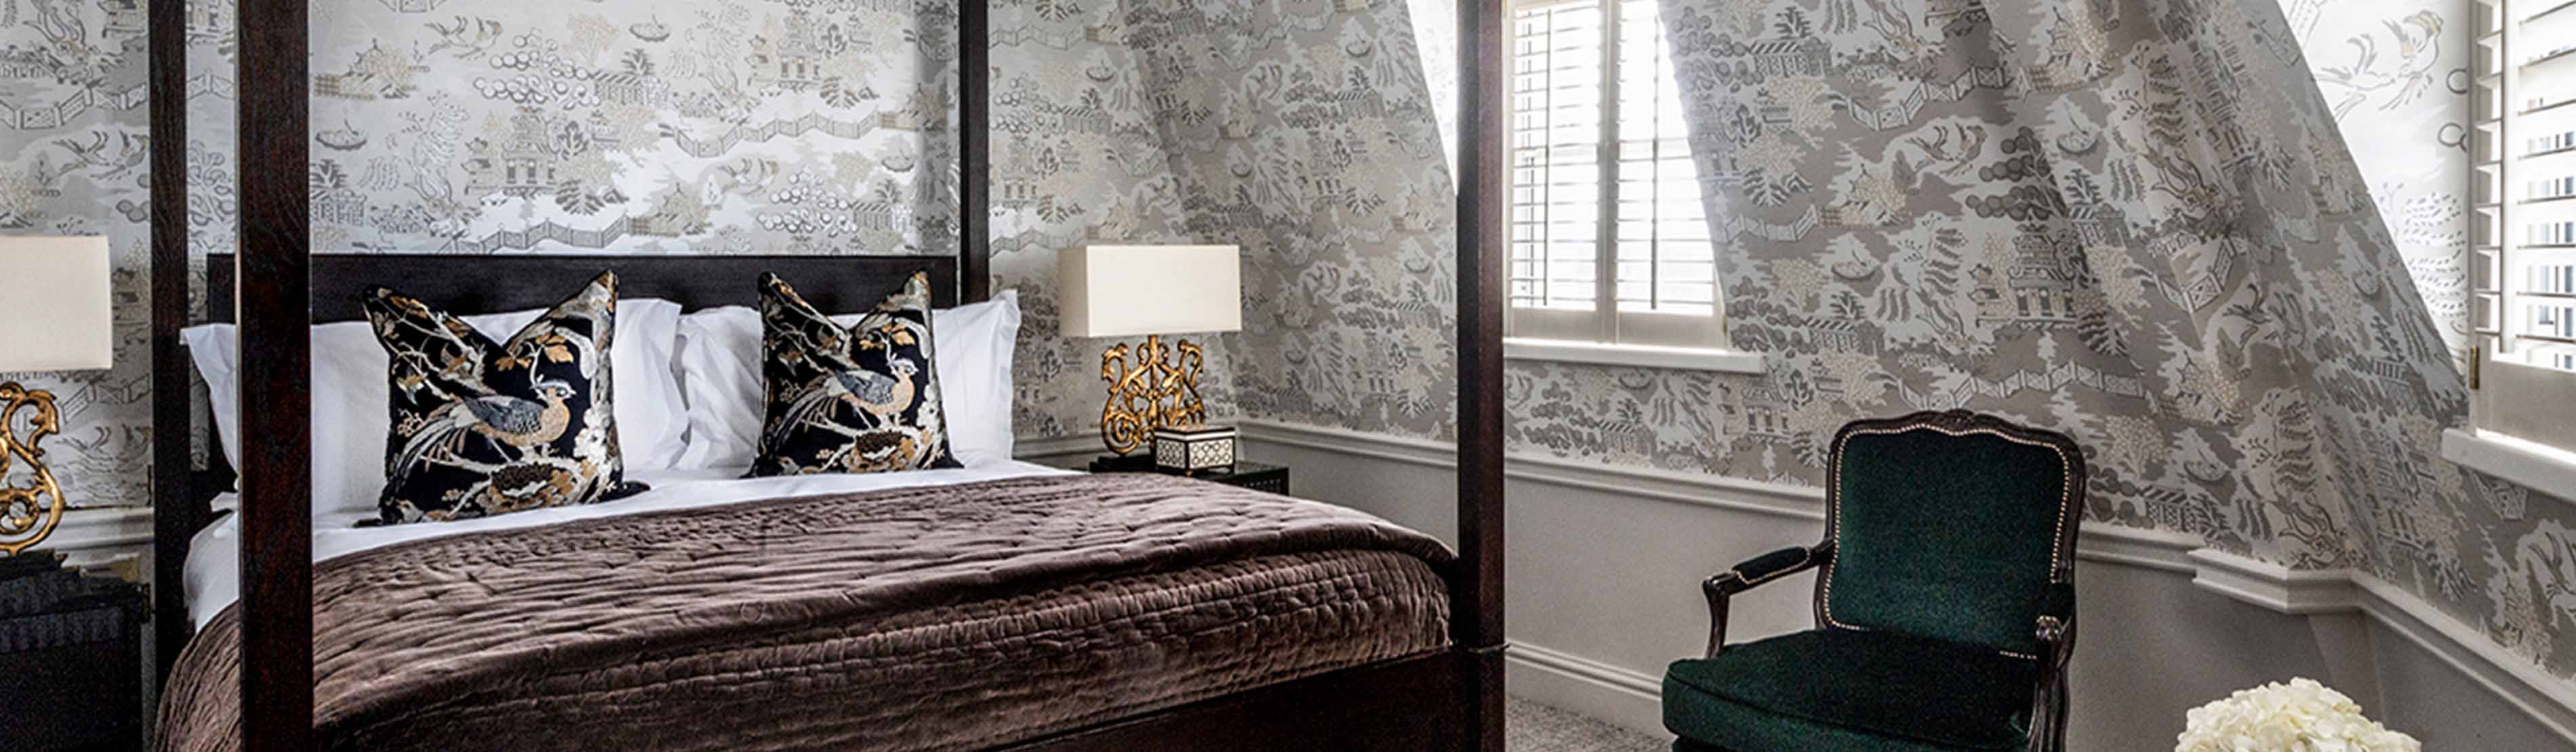 Luxury bedroom suite at The Kensington 